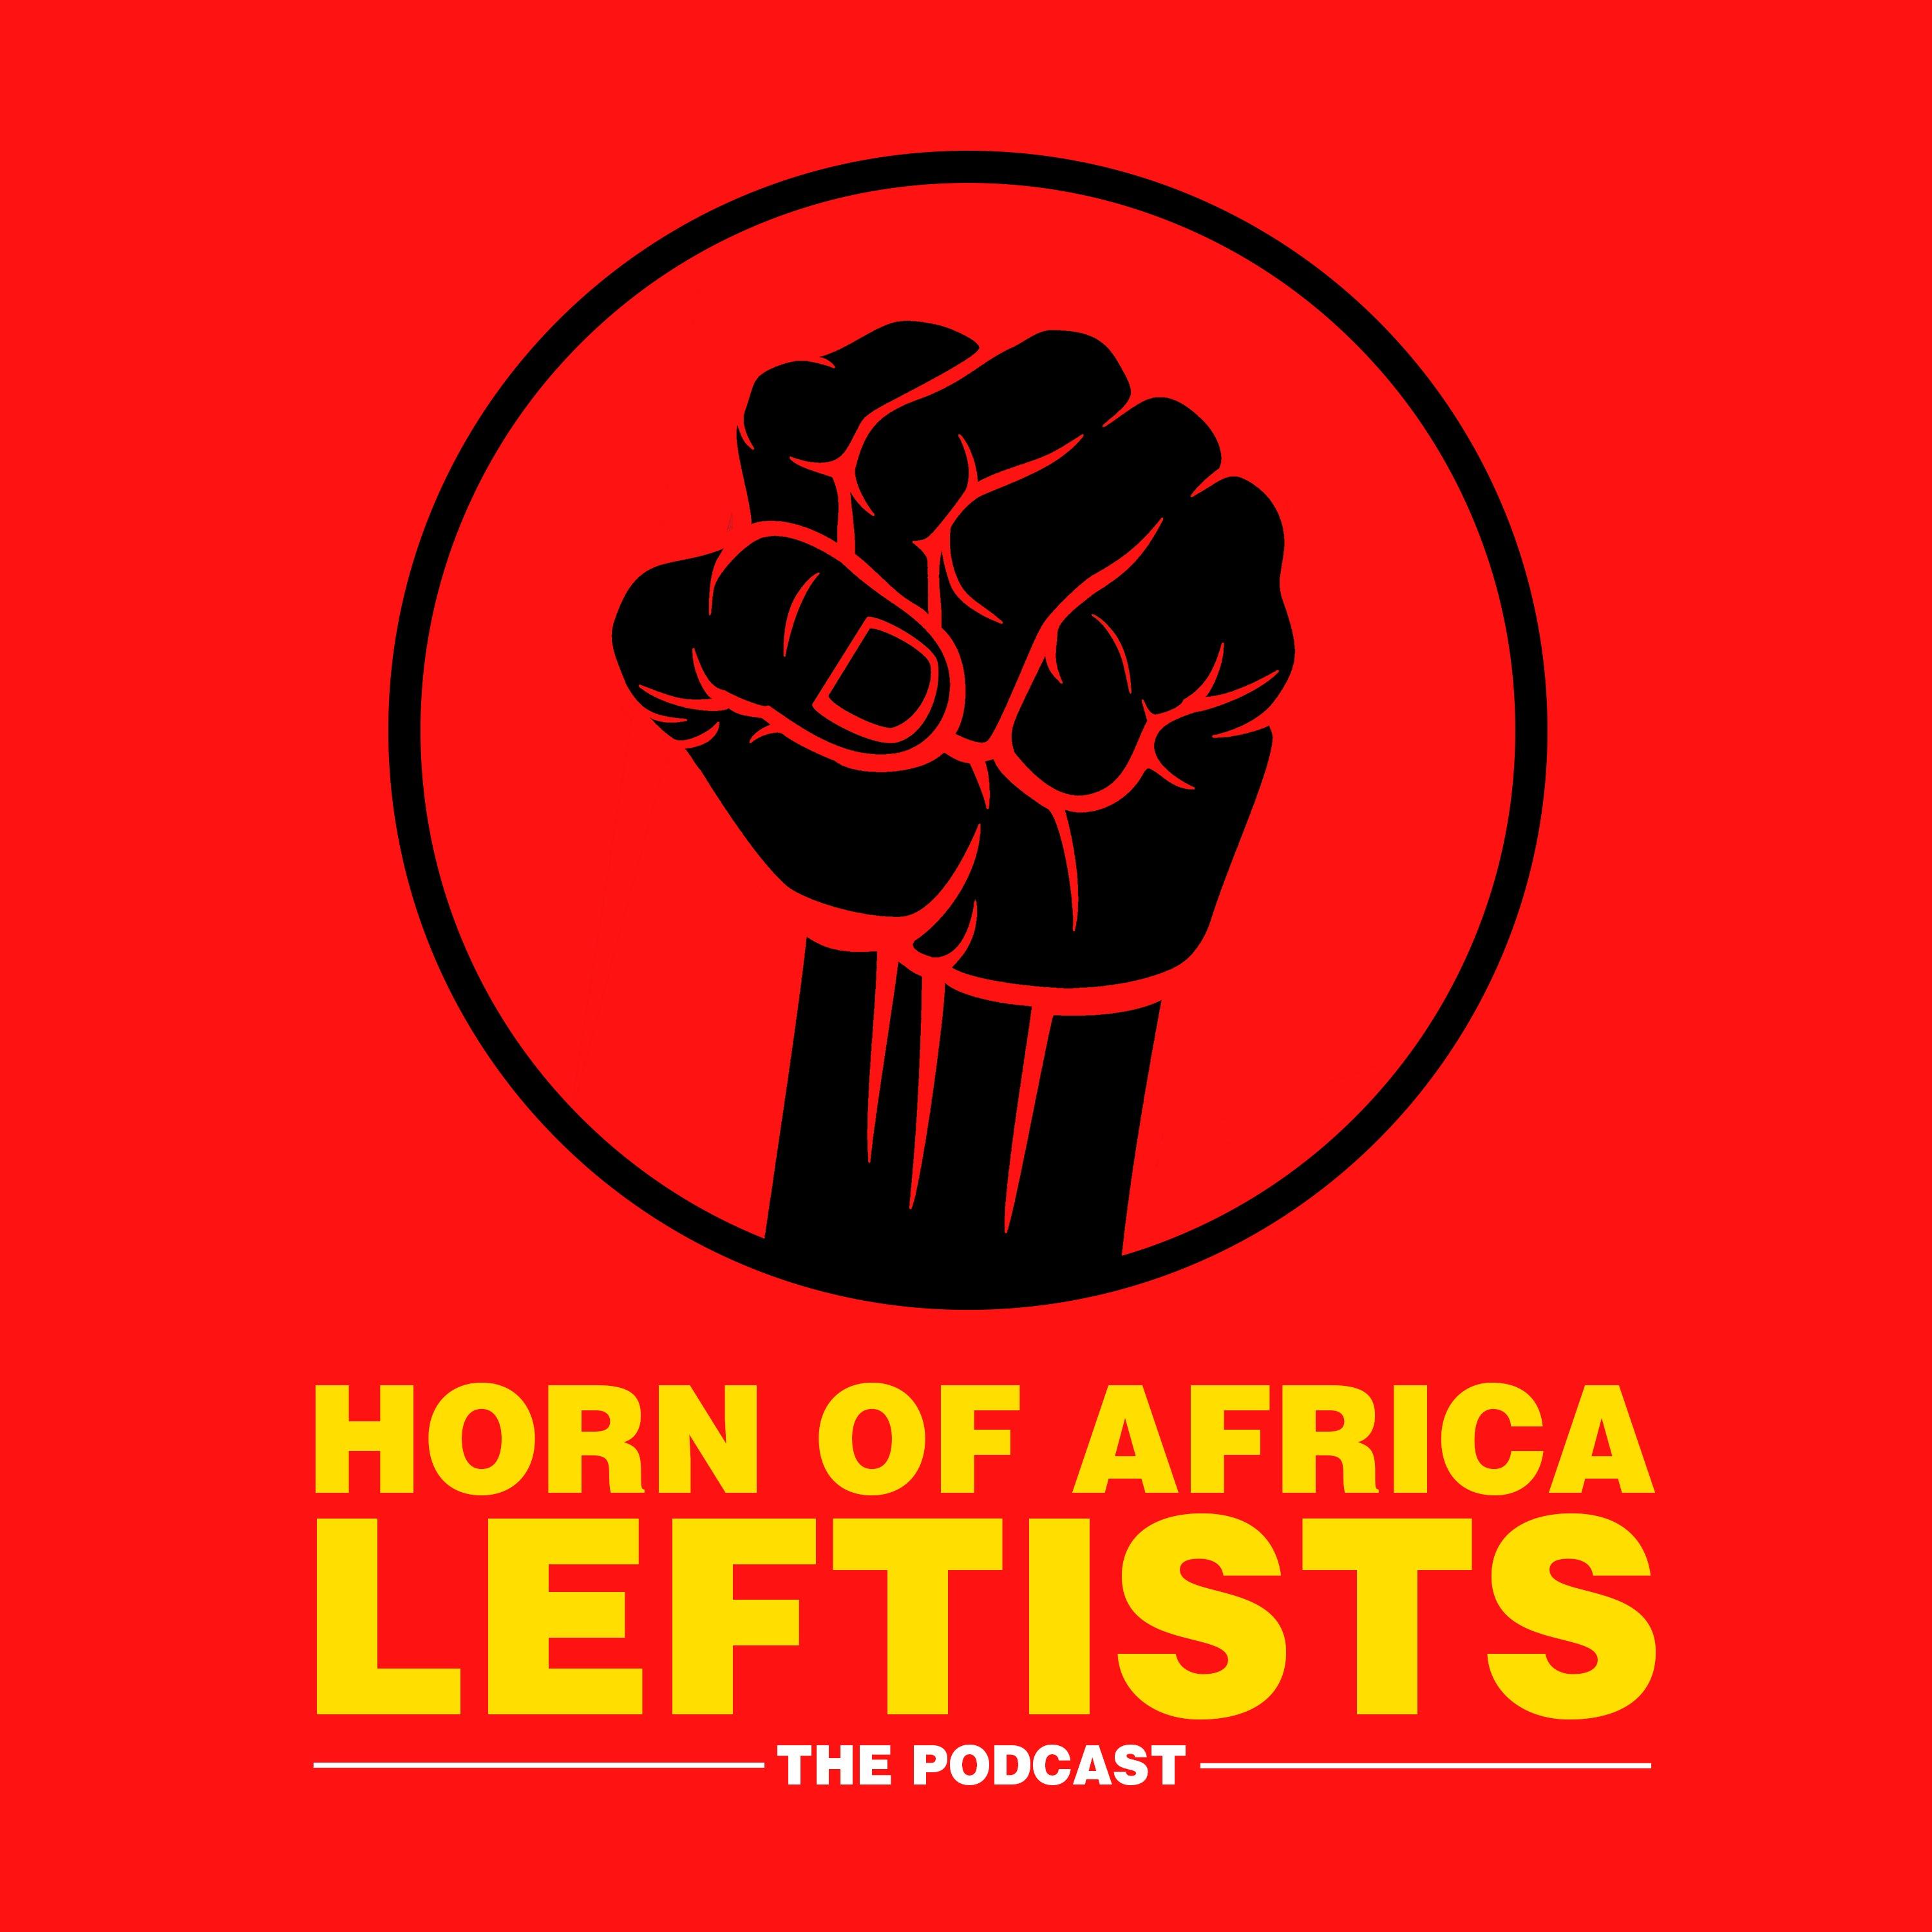 Horn of Africa Leftists